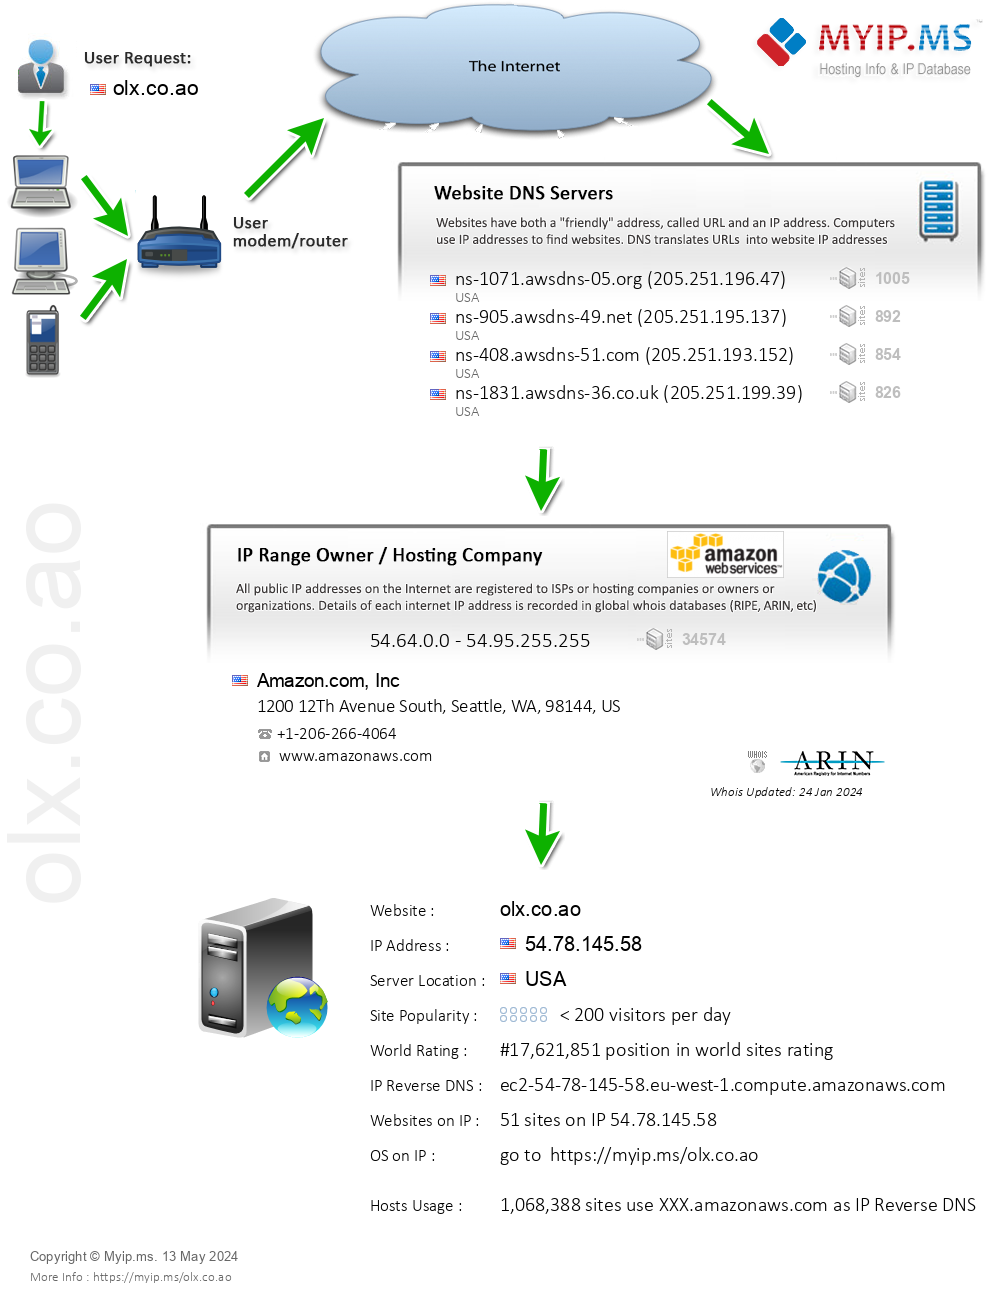 Olx.co.ao - Website Hosting Visual IP Diagram